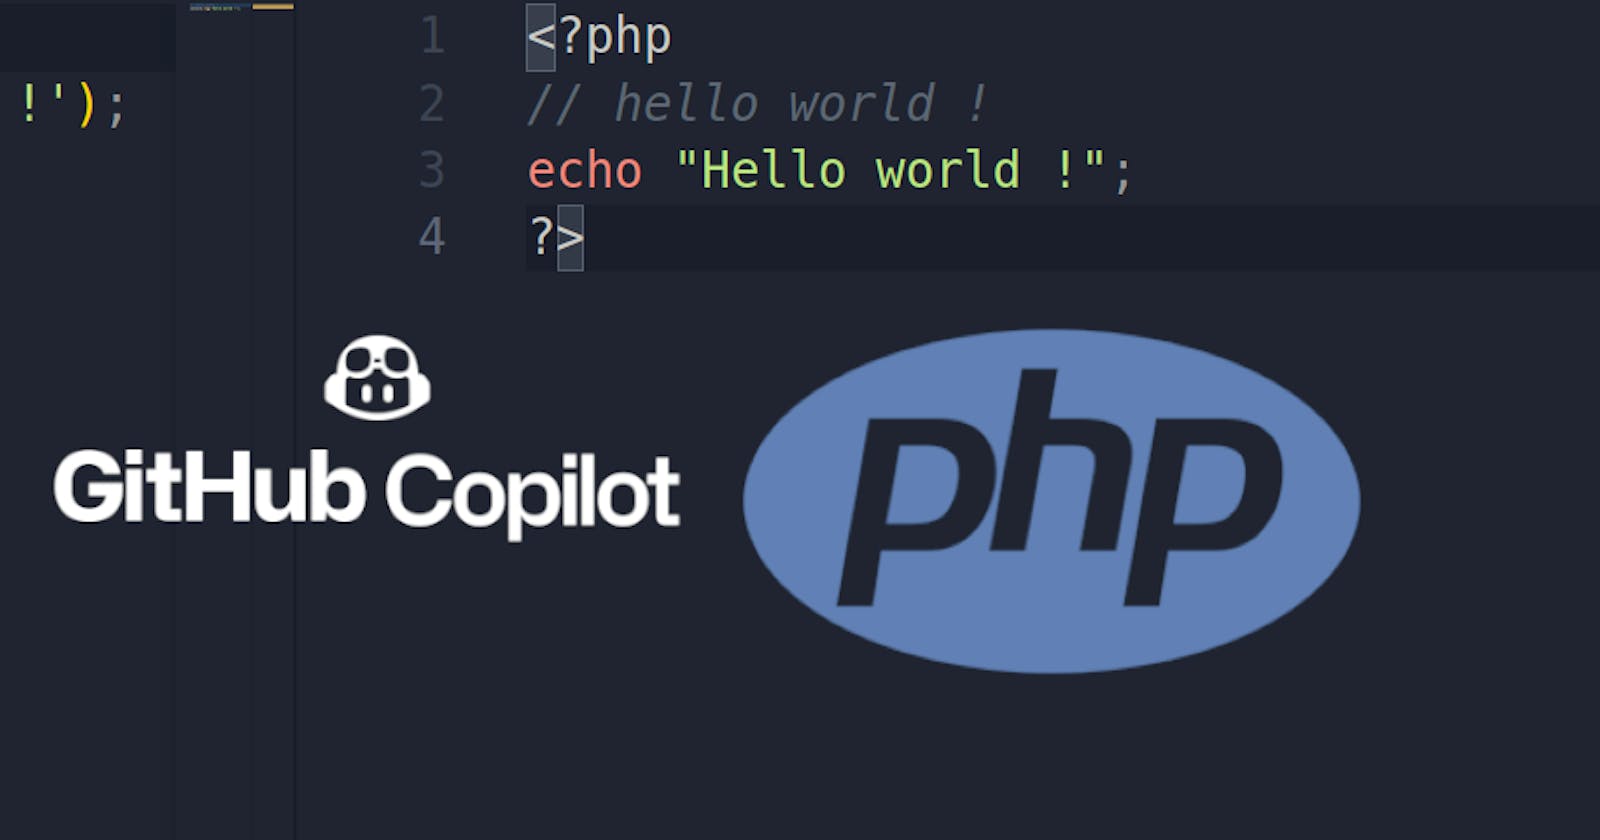 Apprendre plus vite un nouveau langage avec GitHub Copilot